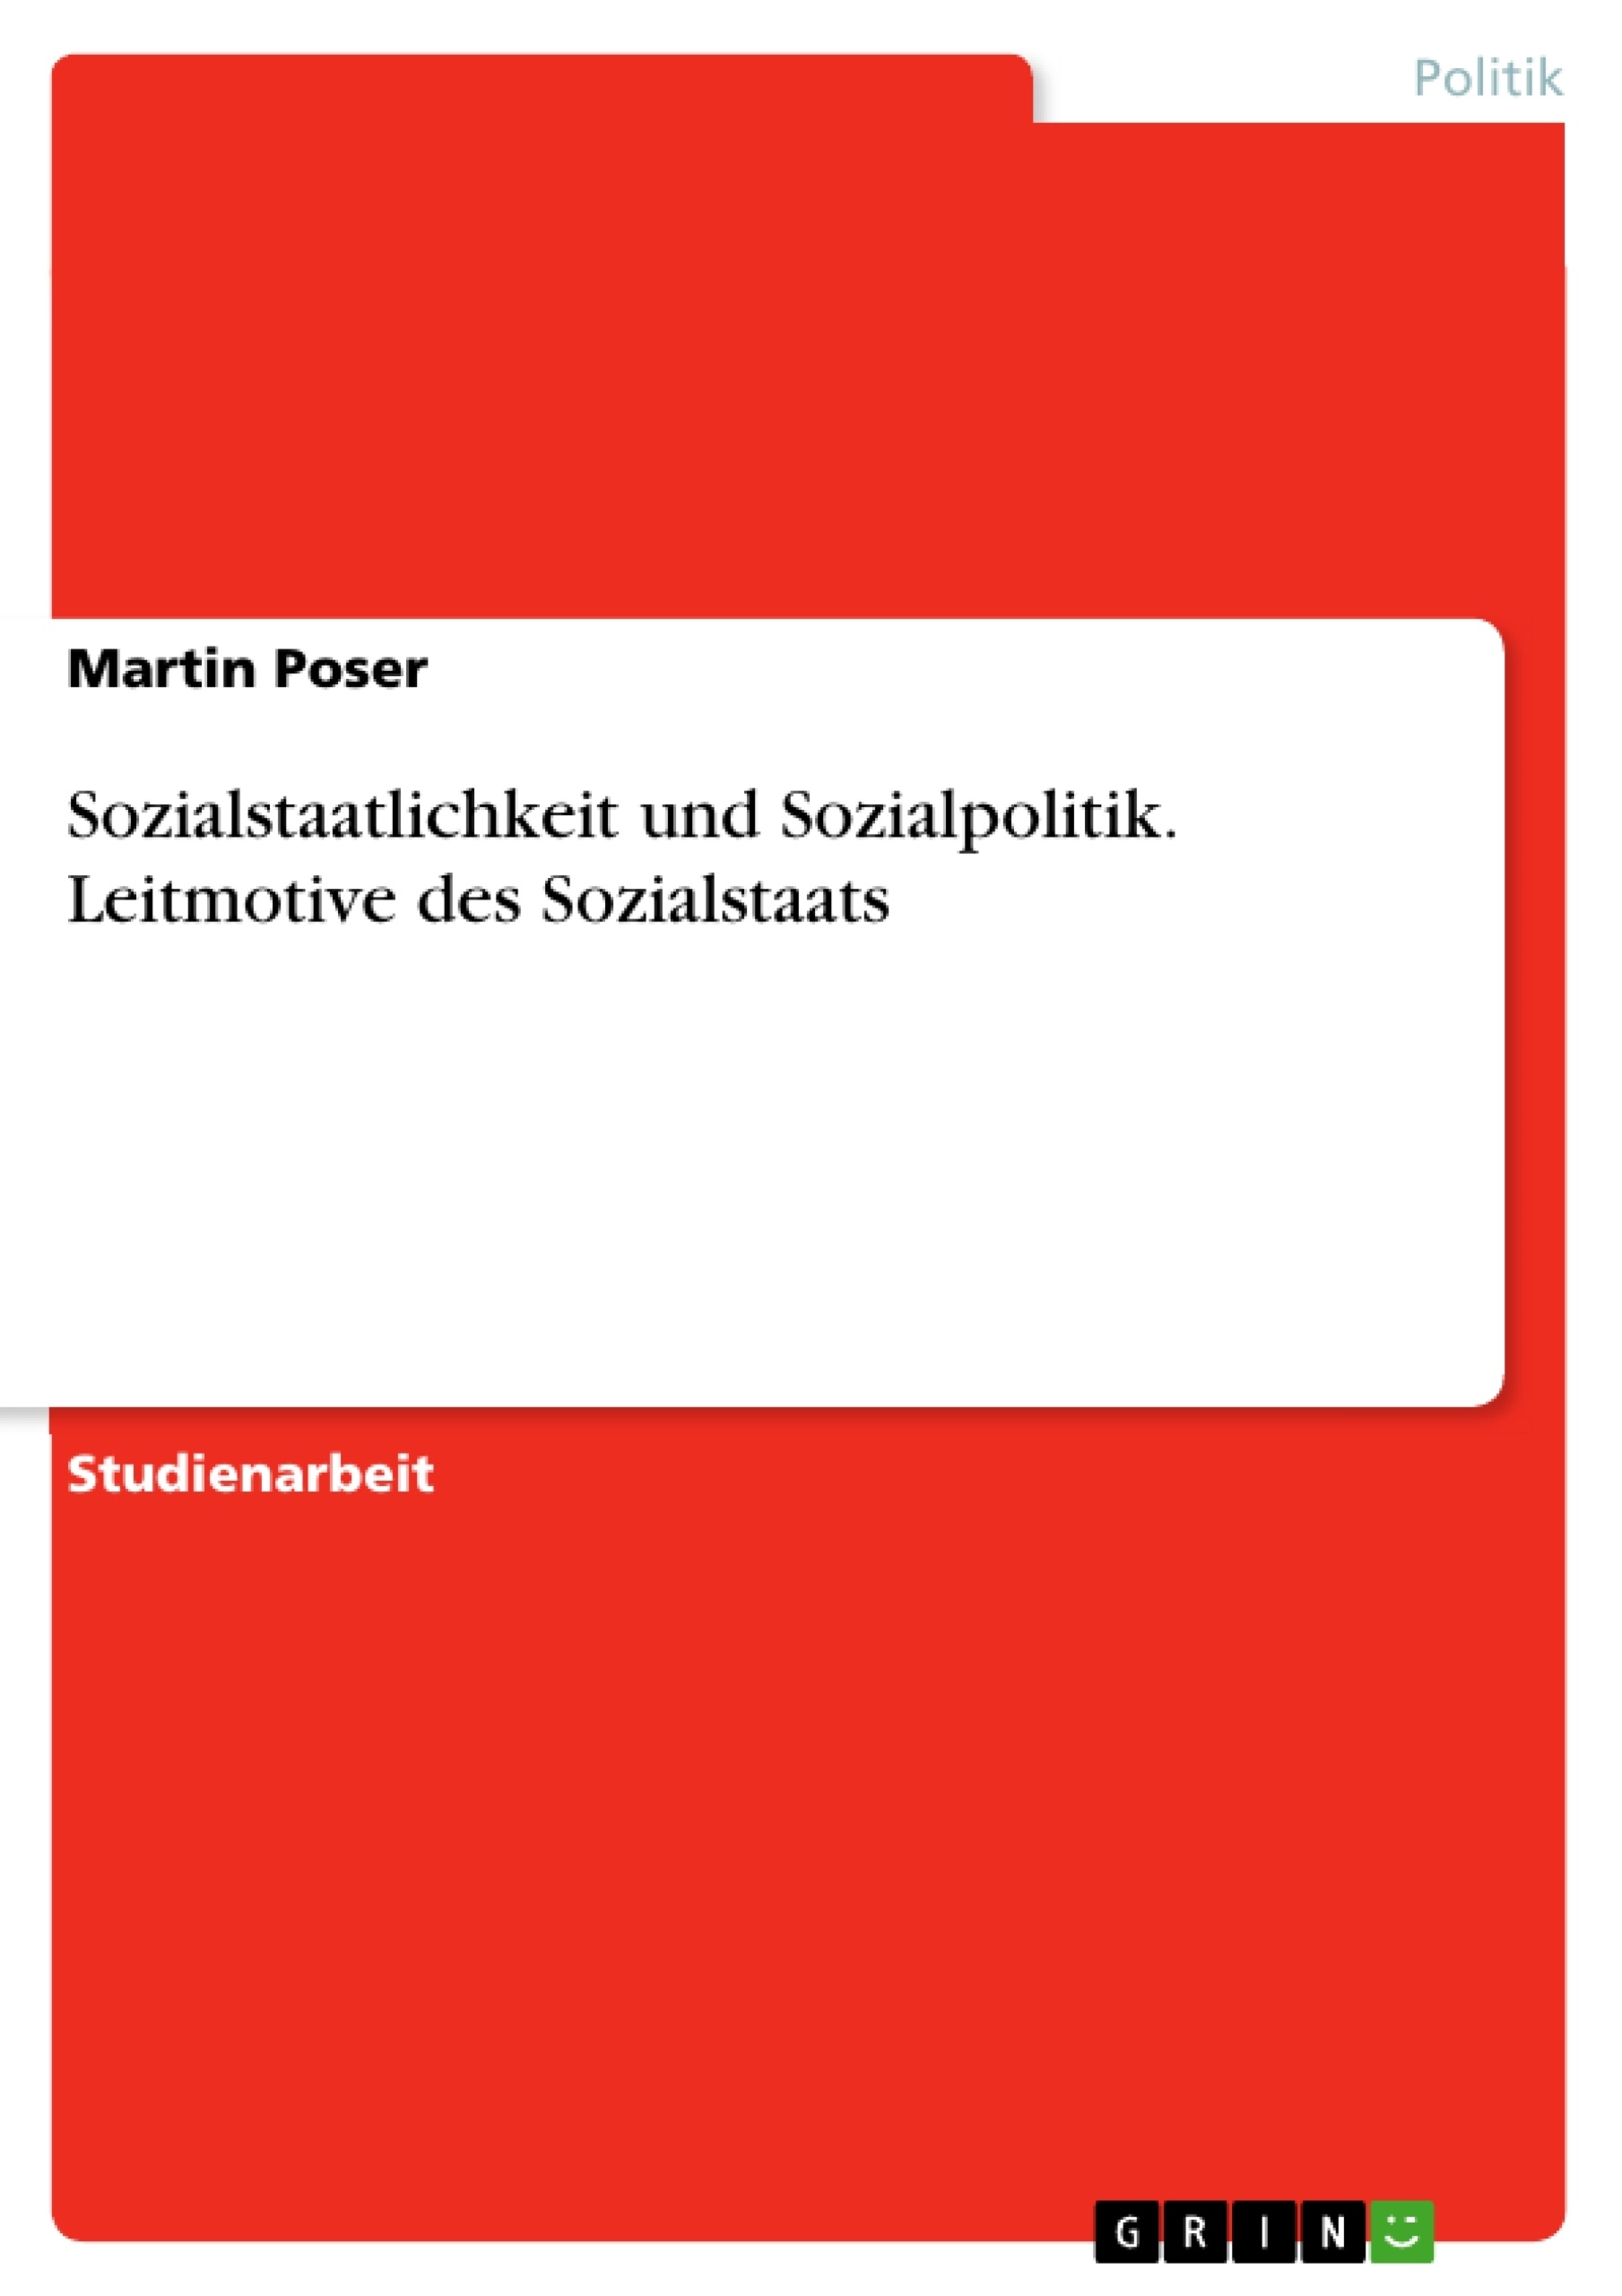 Titre: Sozialstaatlichkeit und Sozialpolitik. Leitmotive des Sozialstaats